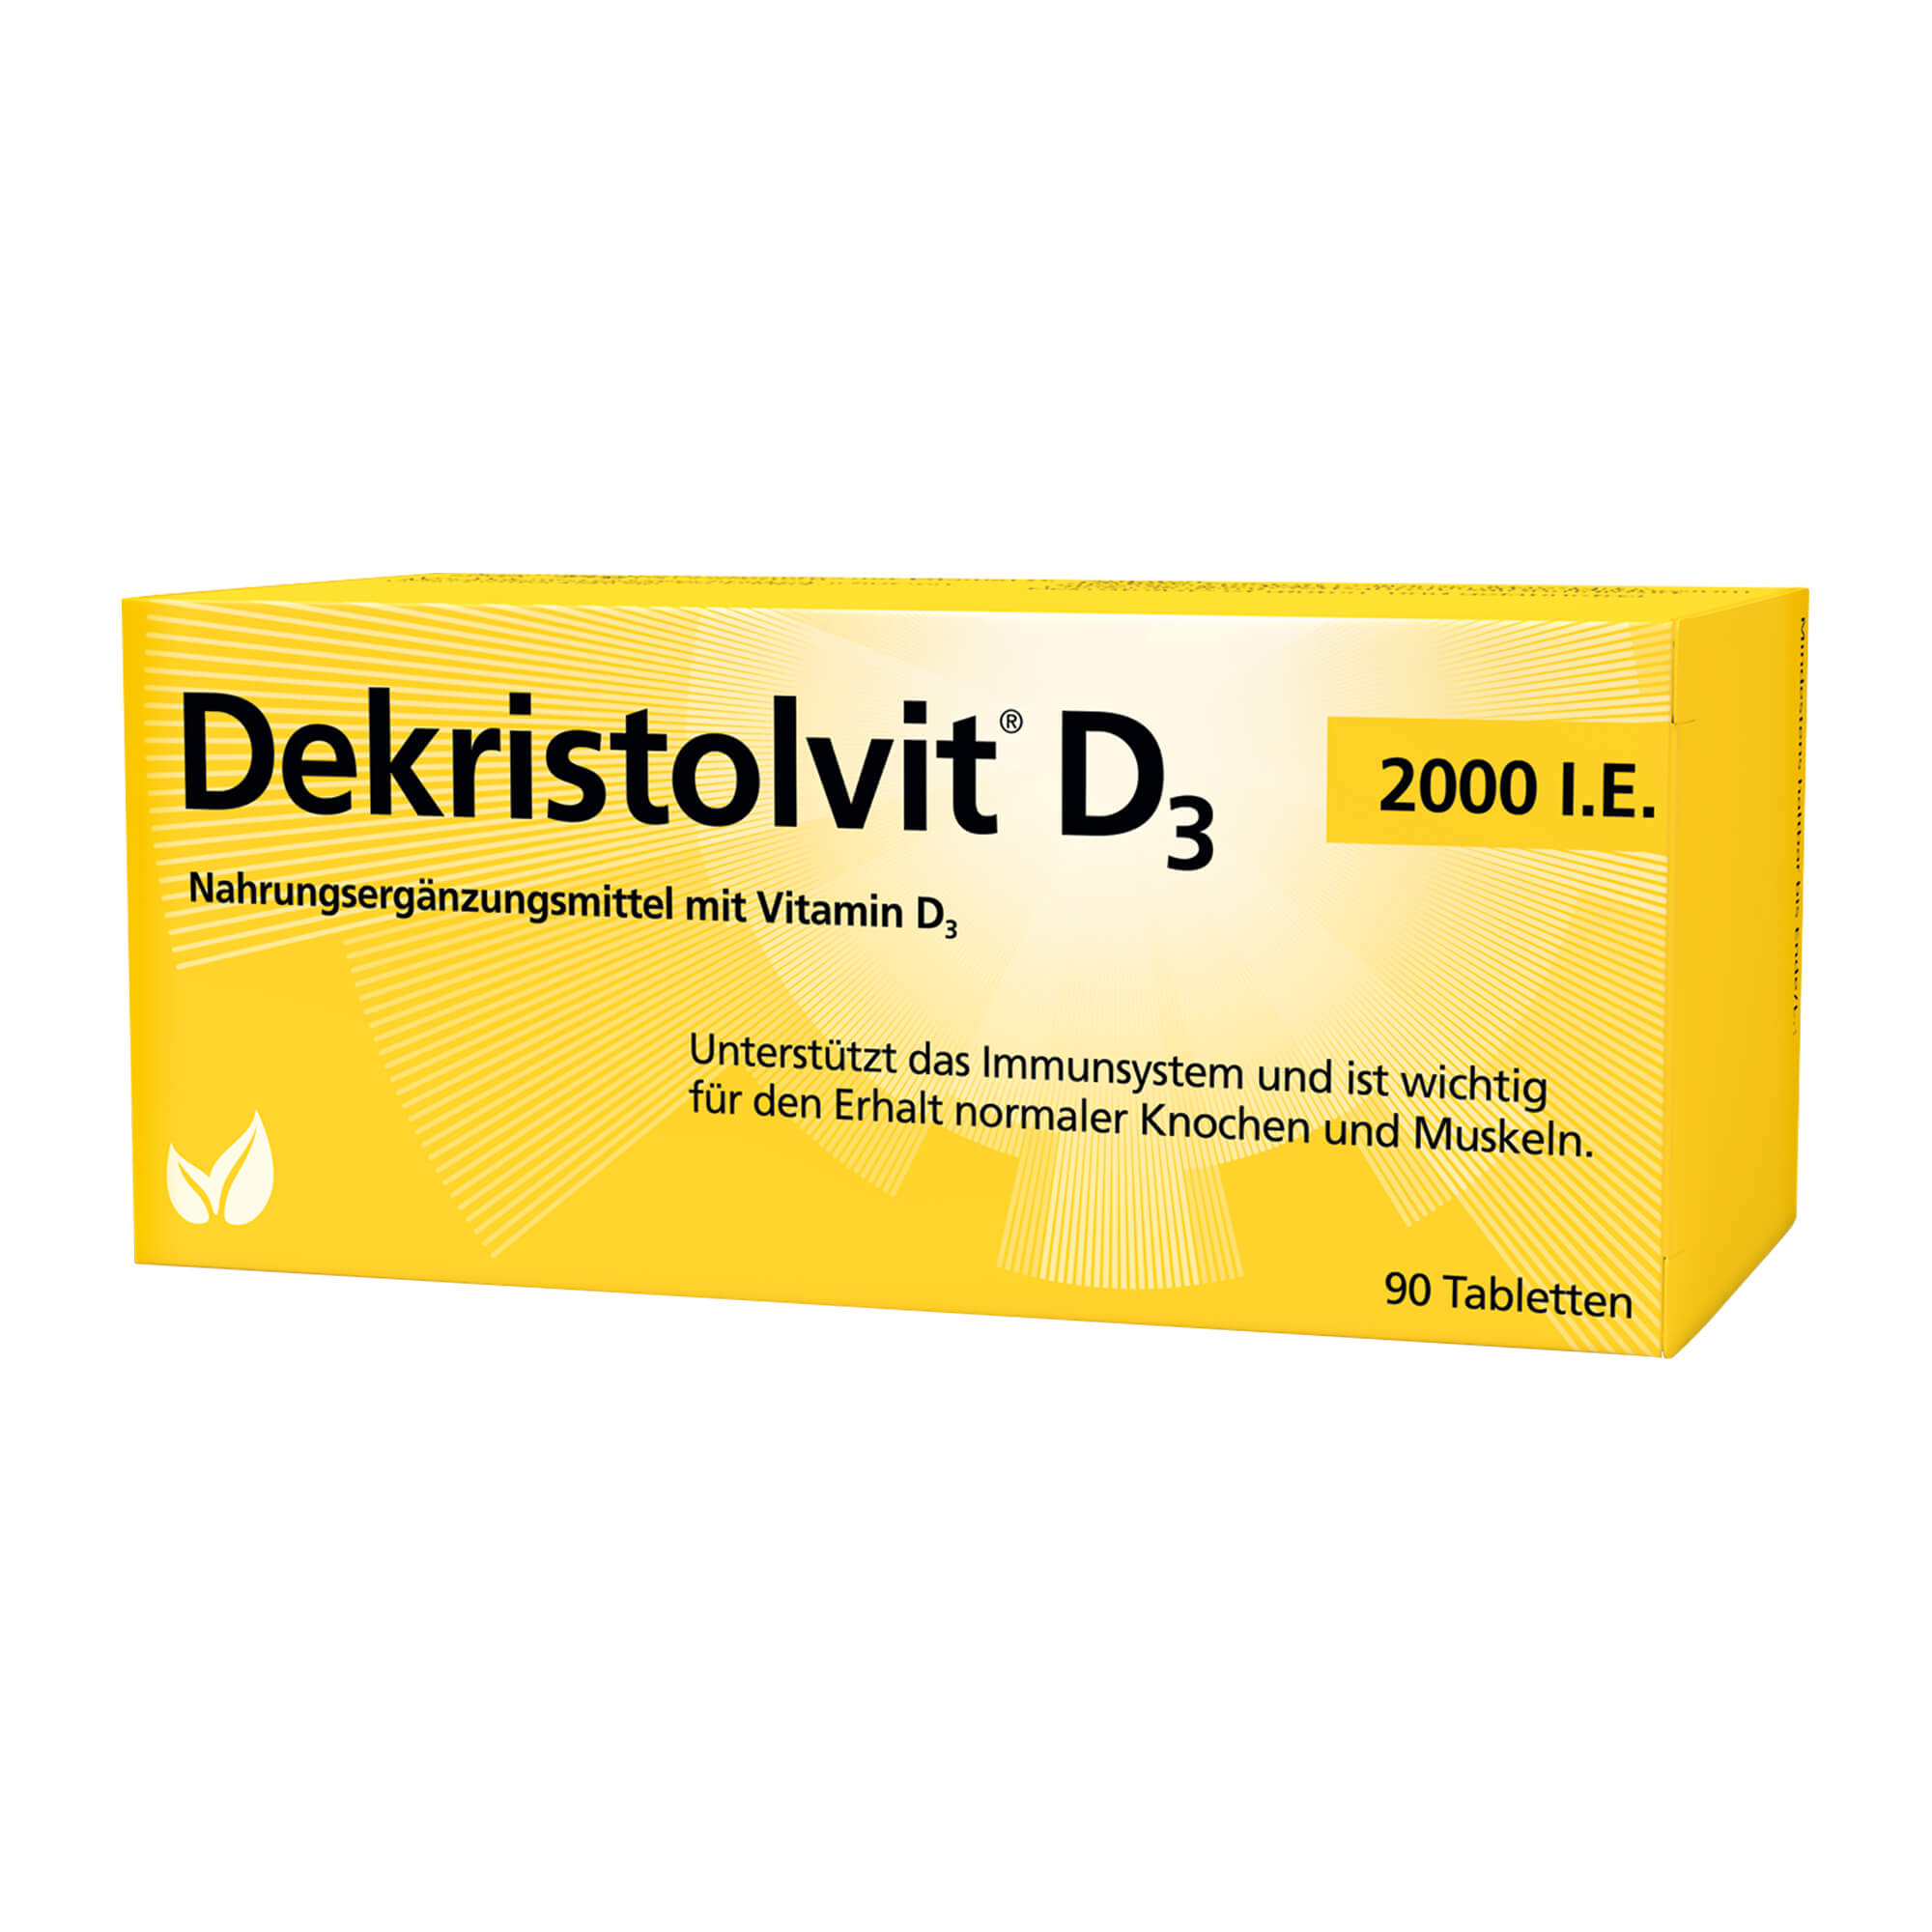 Tabletten mit Vitamin D3 für Kinder ab 11 Jahren zur täglichen Einnahme.